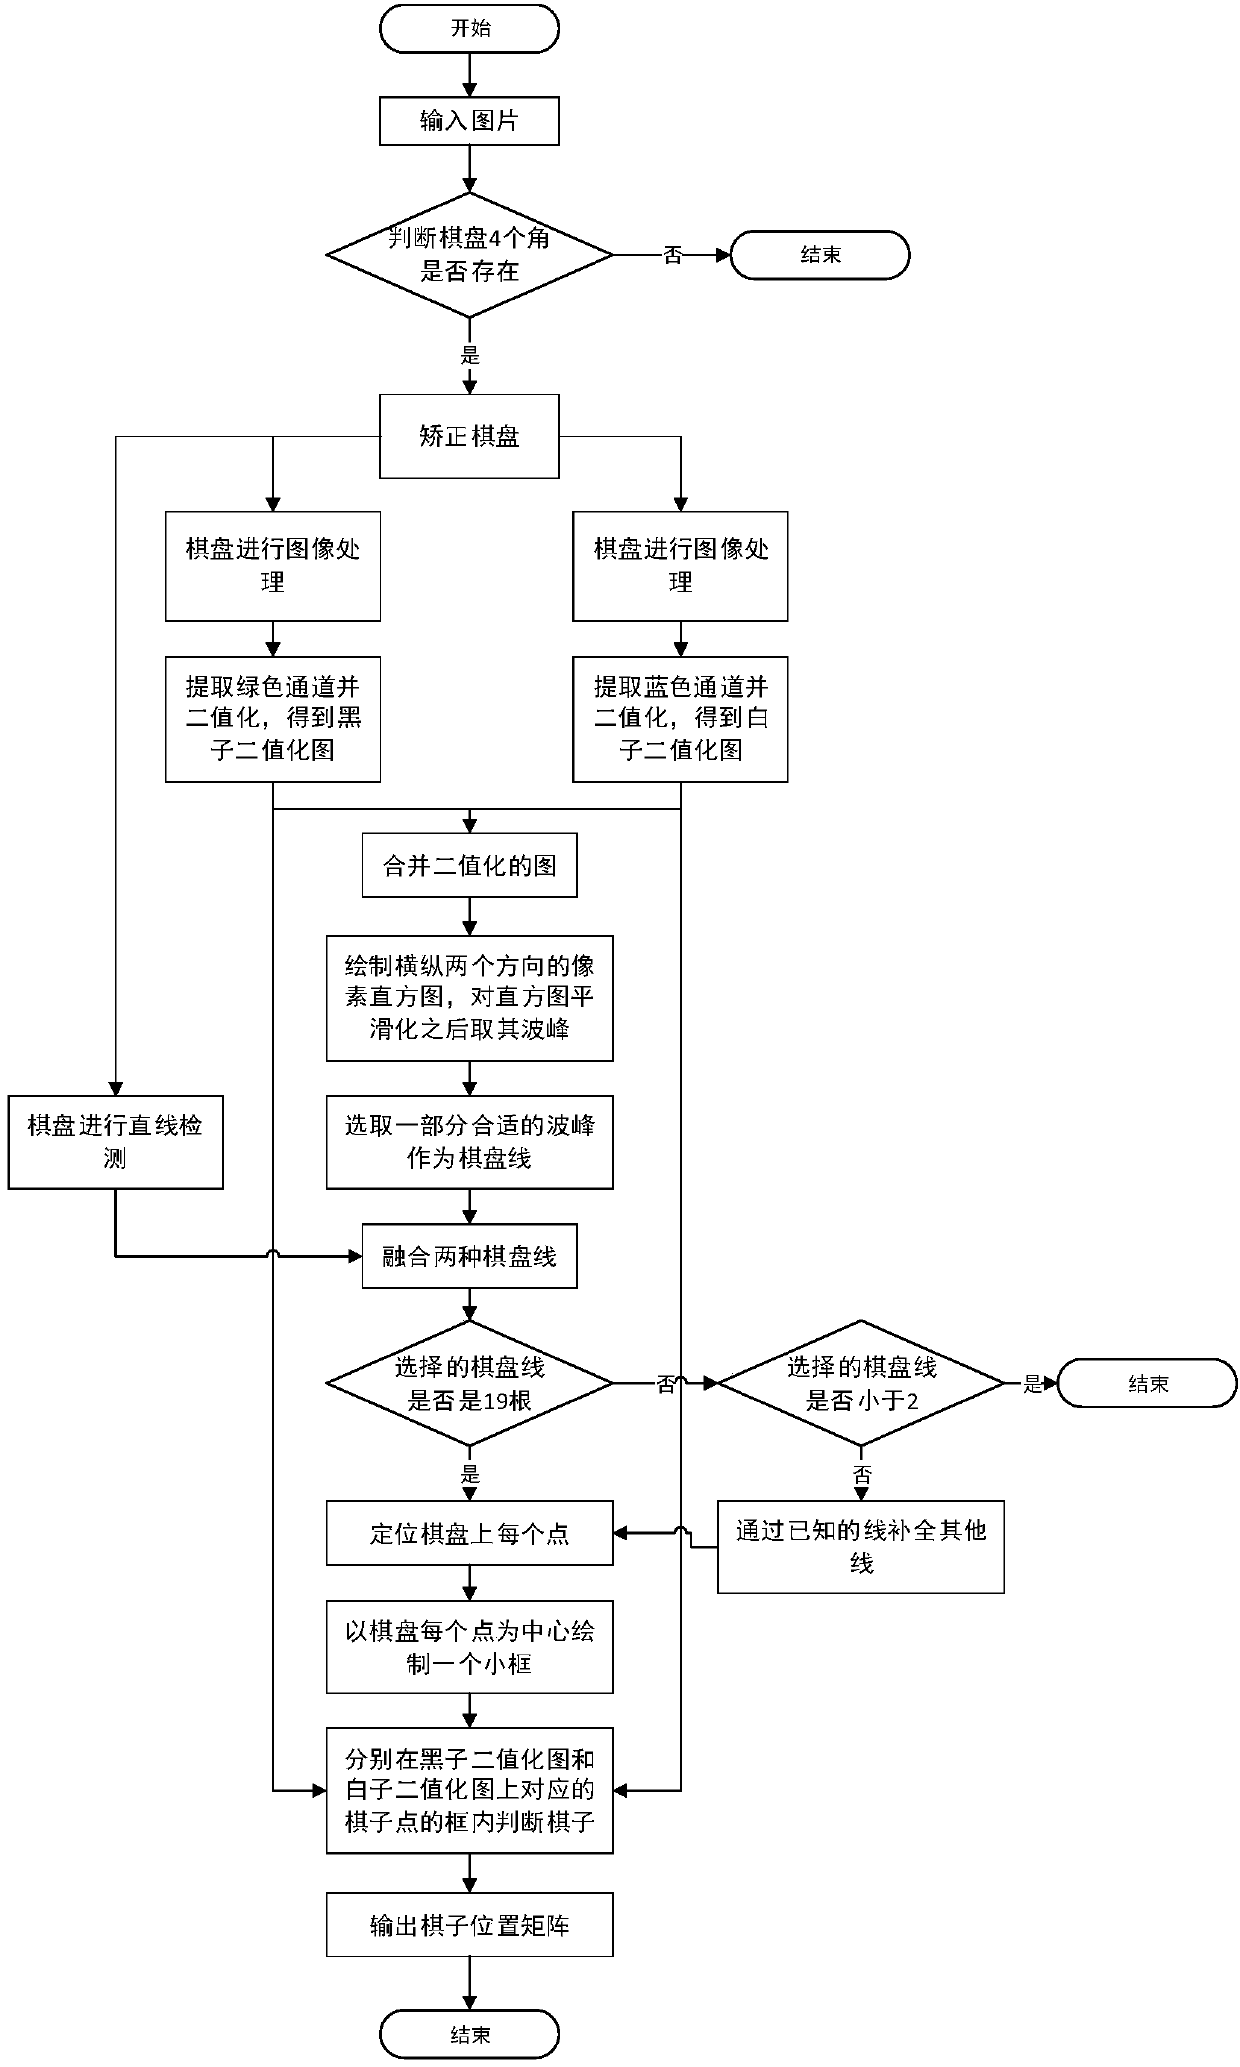 Image-based weiqi manual identification method